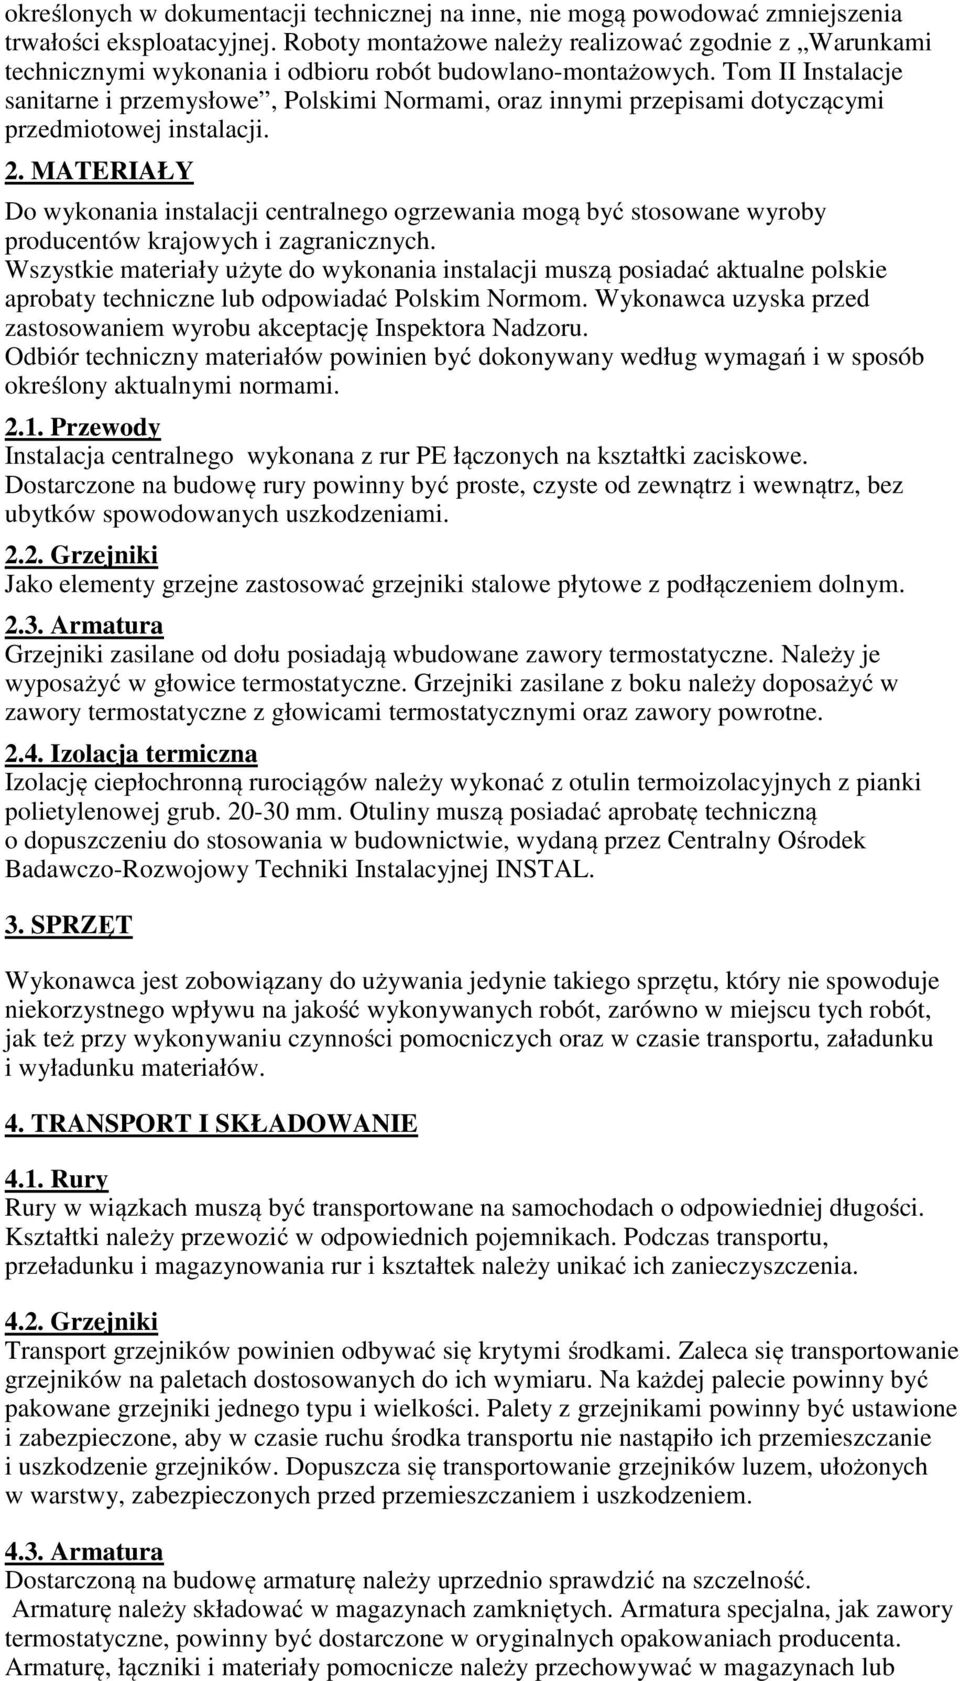 Tom II Instalacje sanitarne i przemysłowe, Polskimi Normami, oraz innymi przepisami dotyczącymi przedmiotowej instalacji. 2.